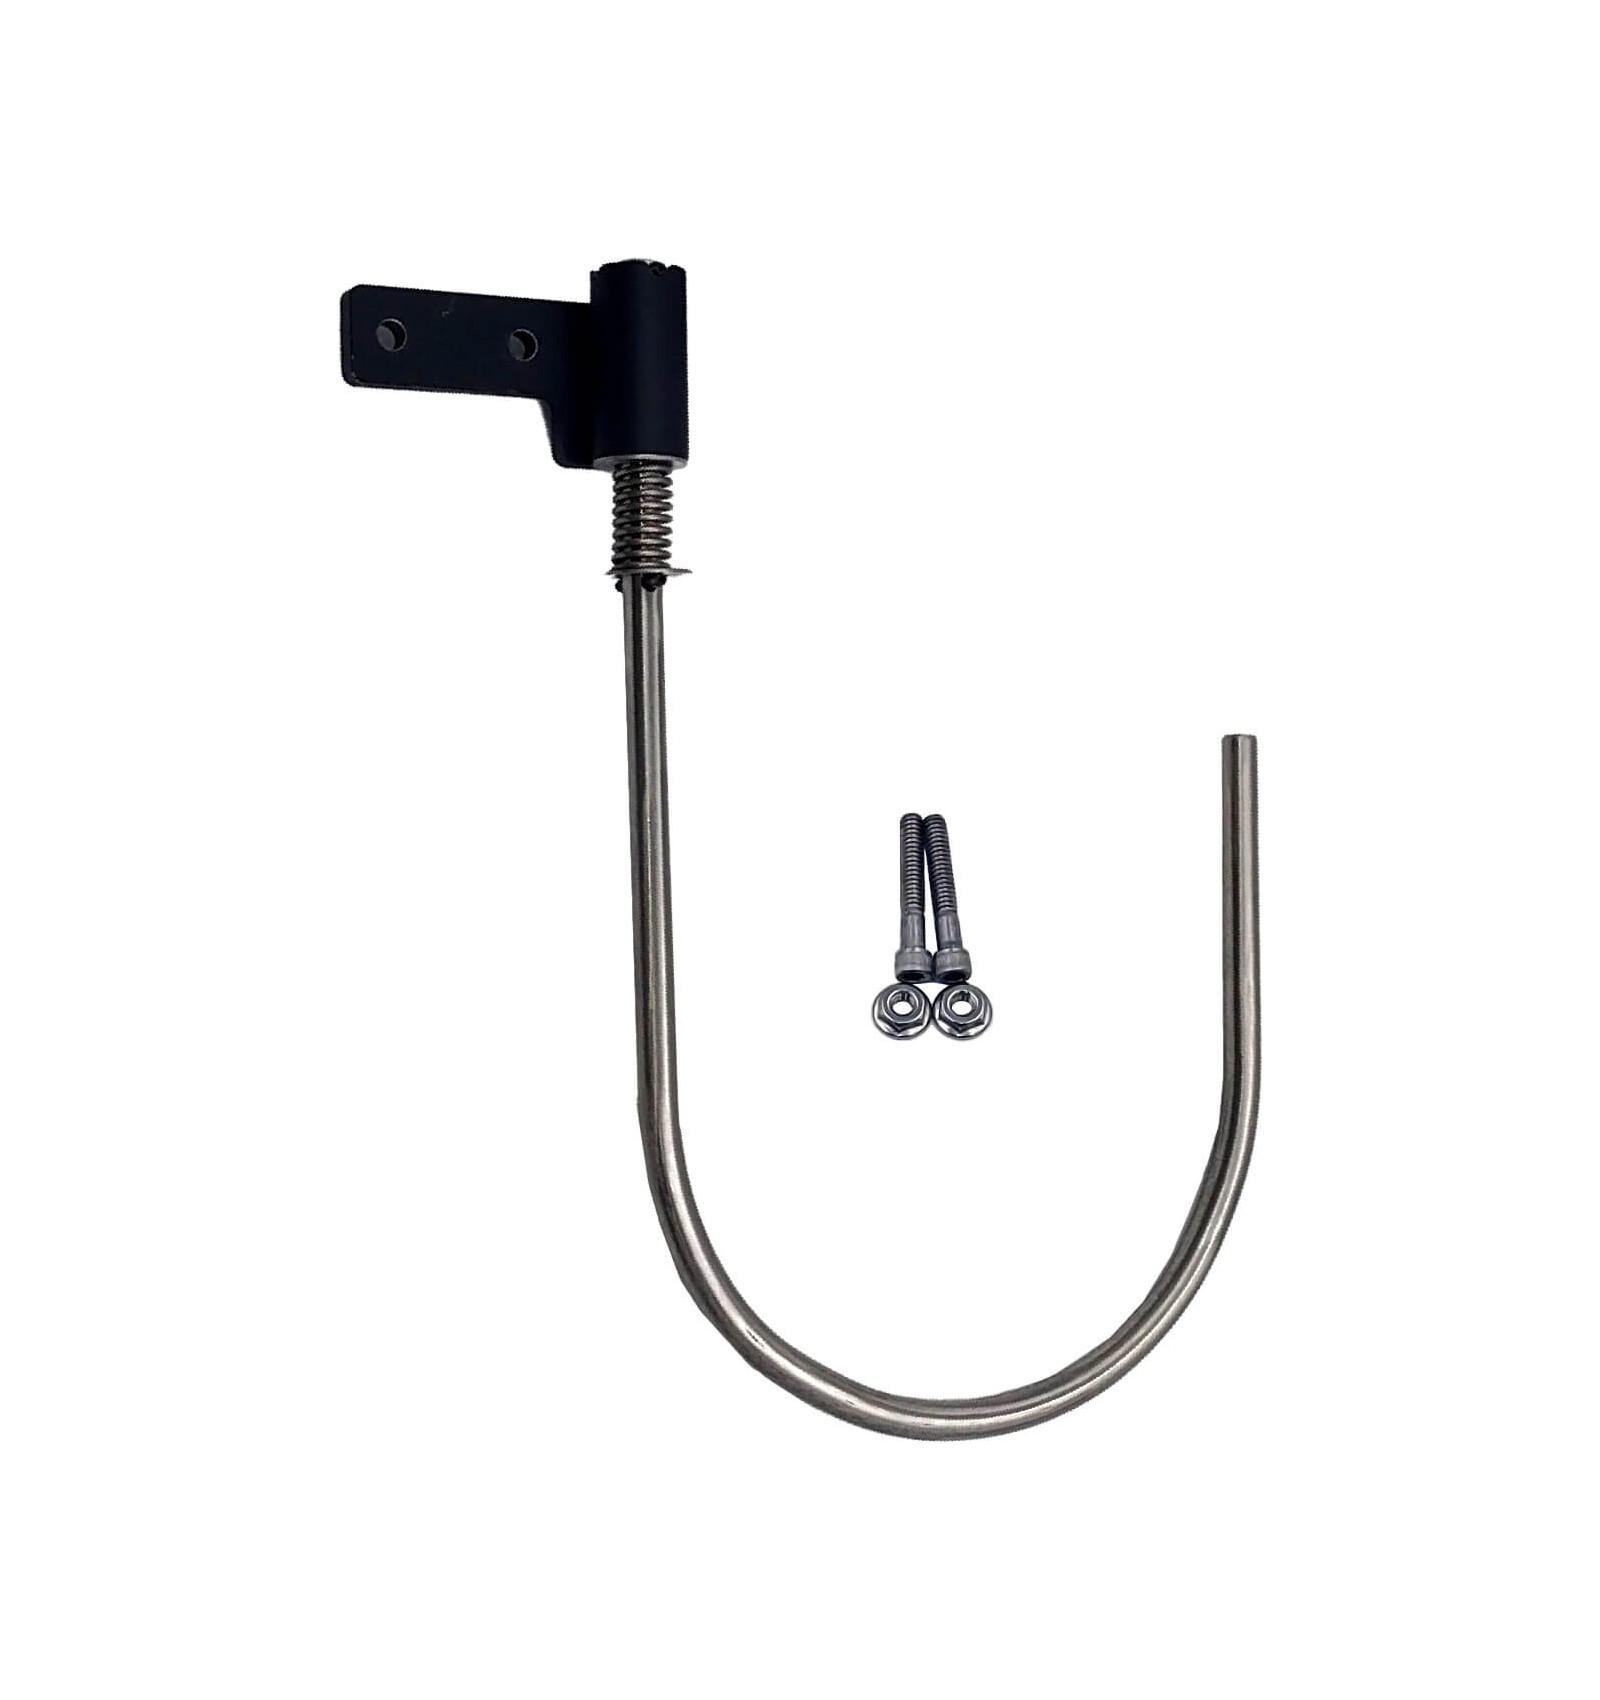 Swivel cable hooks (Pair) - NEBTEK - 3D, HD